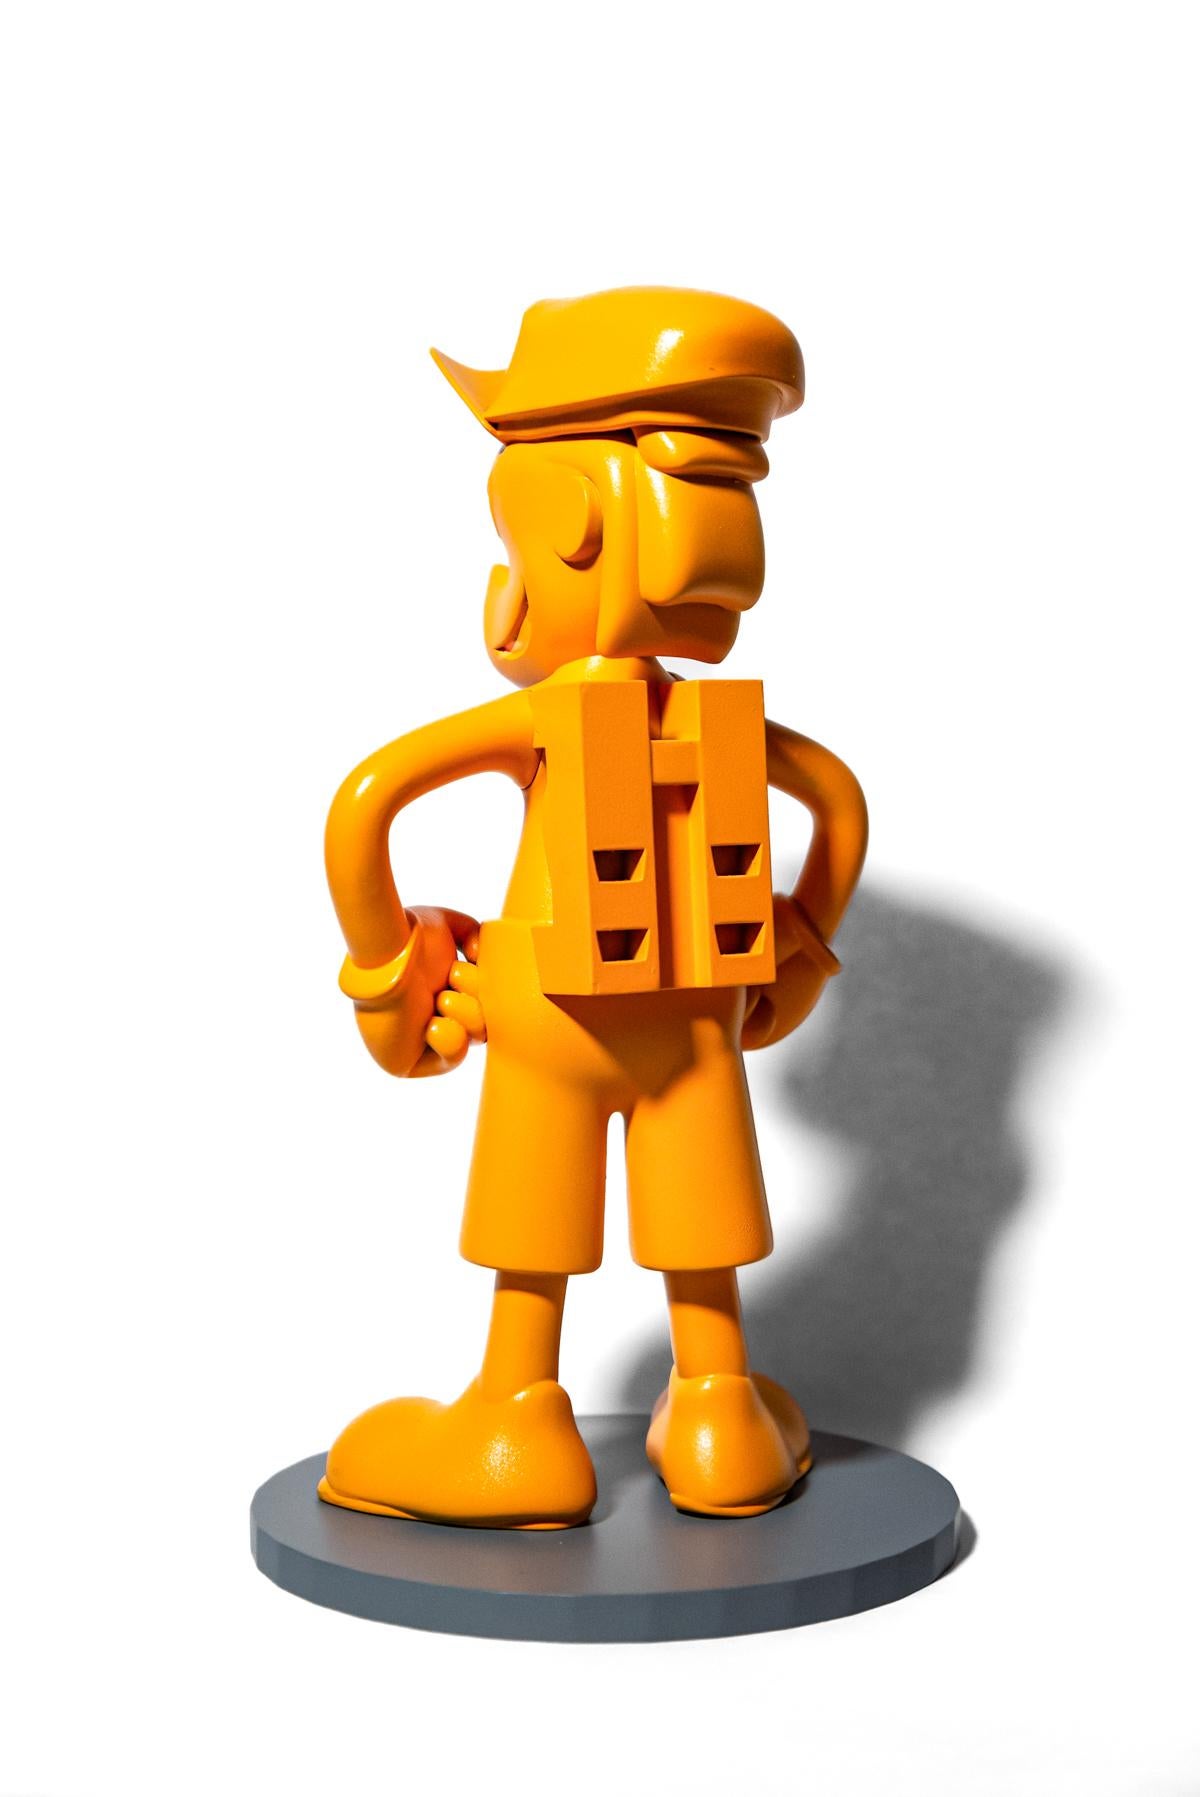 Ludique, colorée et imaginative, la dernière série de sculptures de table de Viktor Mitic semble fusionner le pop art et la science-fiction. La palette de couleurs est amusante, lumineuse et contemporaine - un orange juteux. Ces personnages en 3D